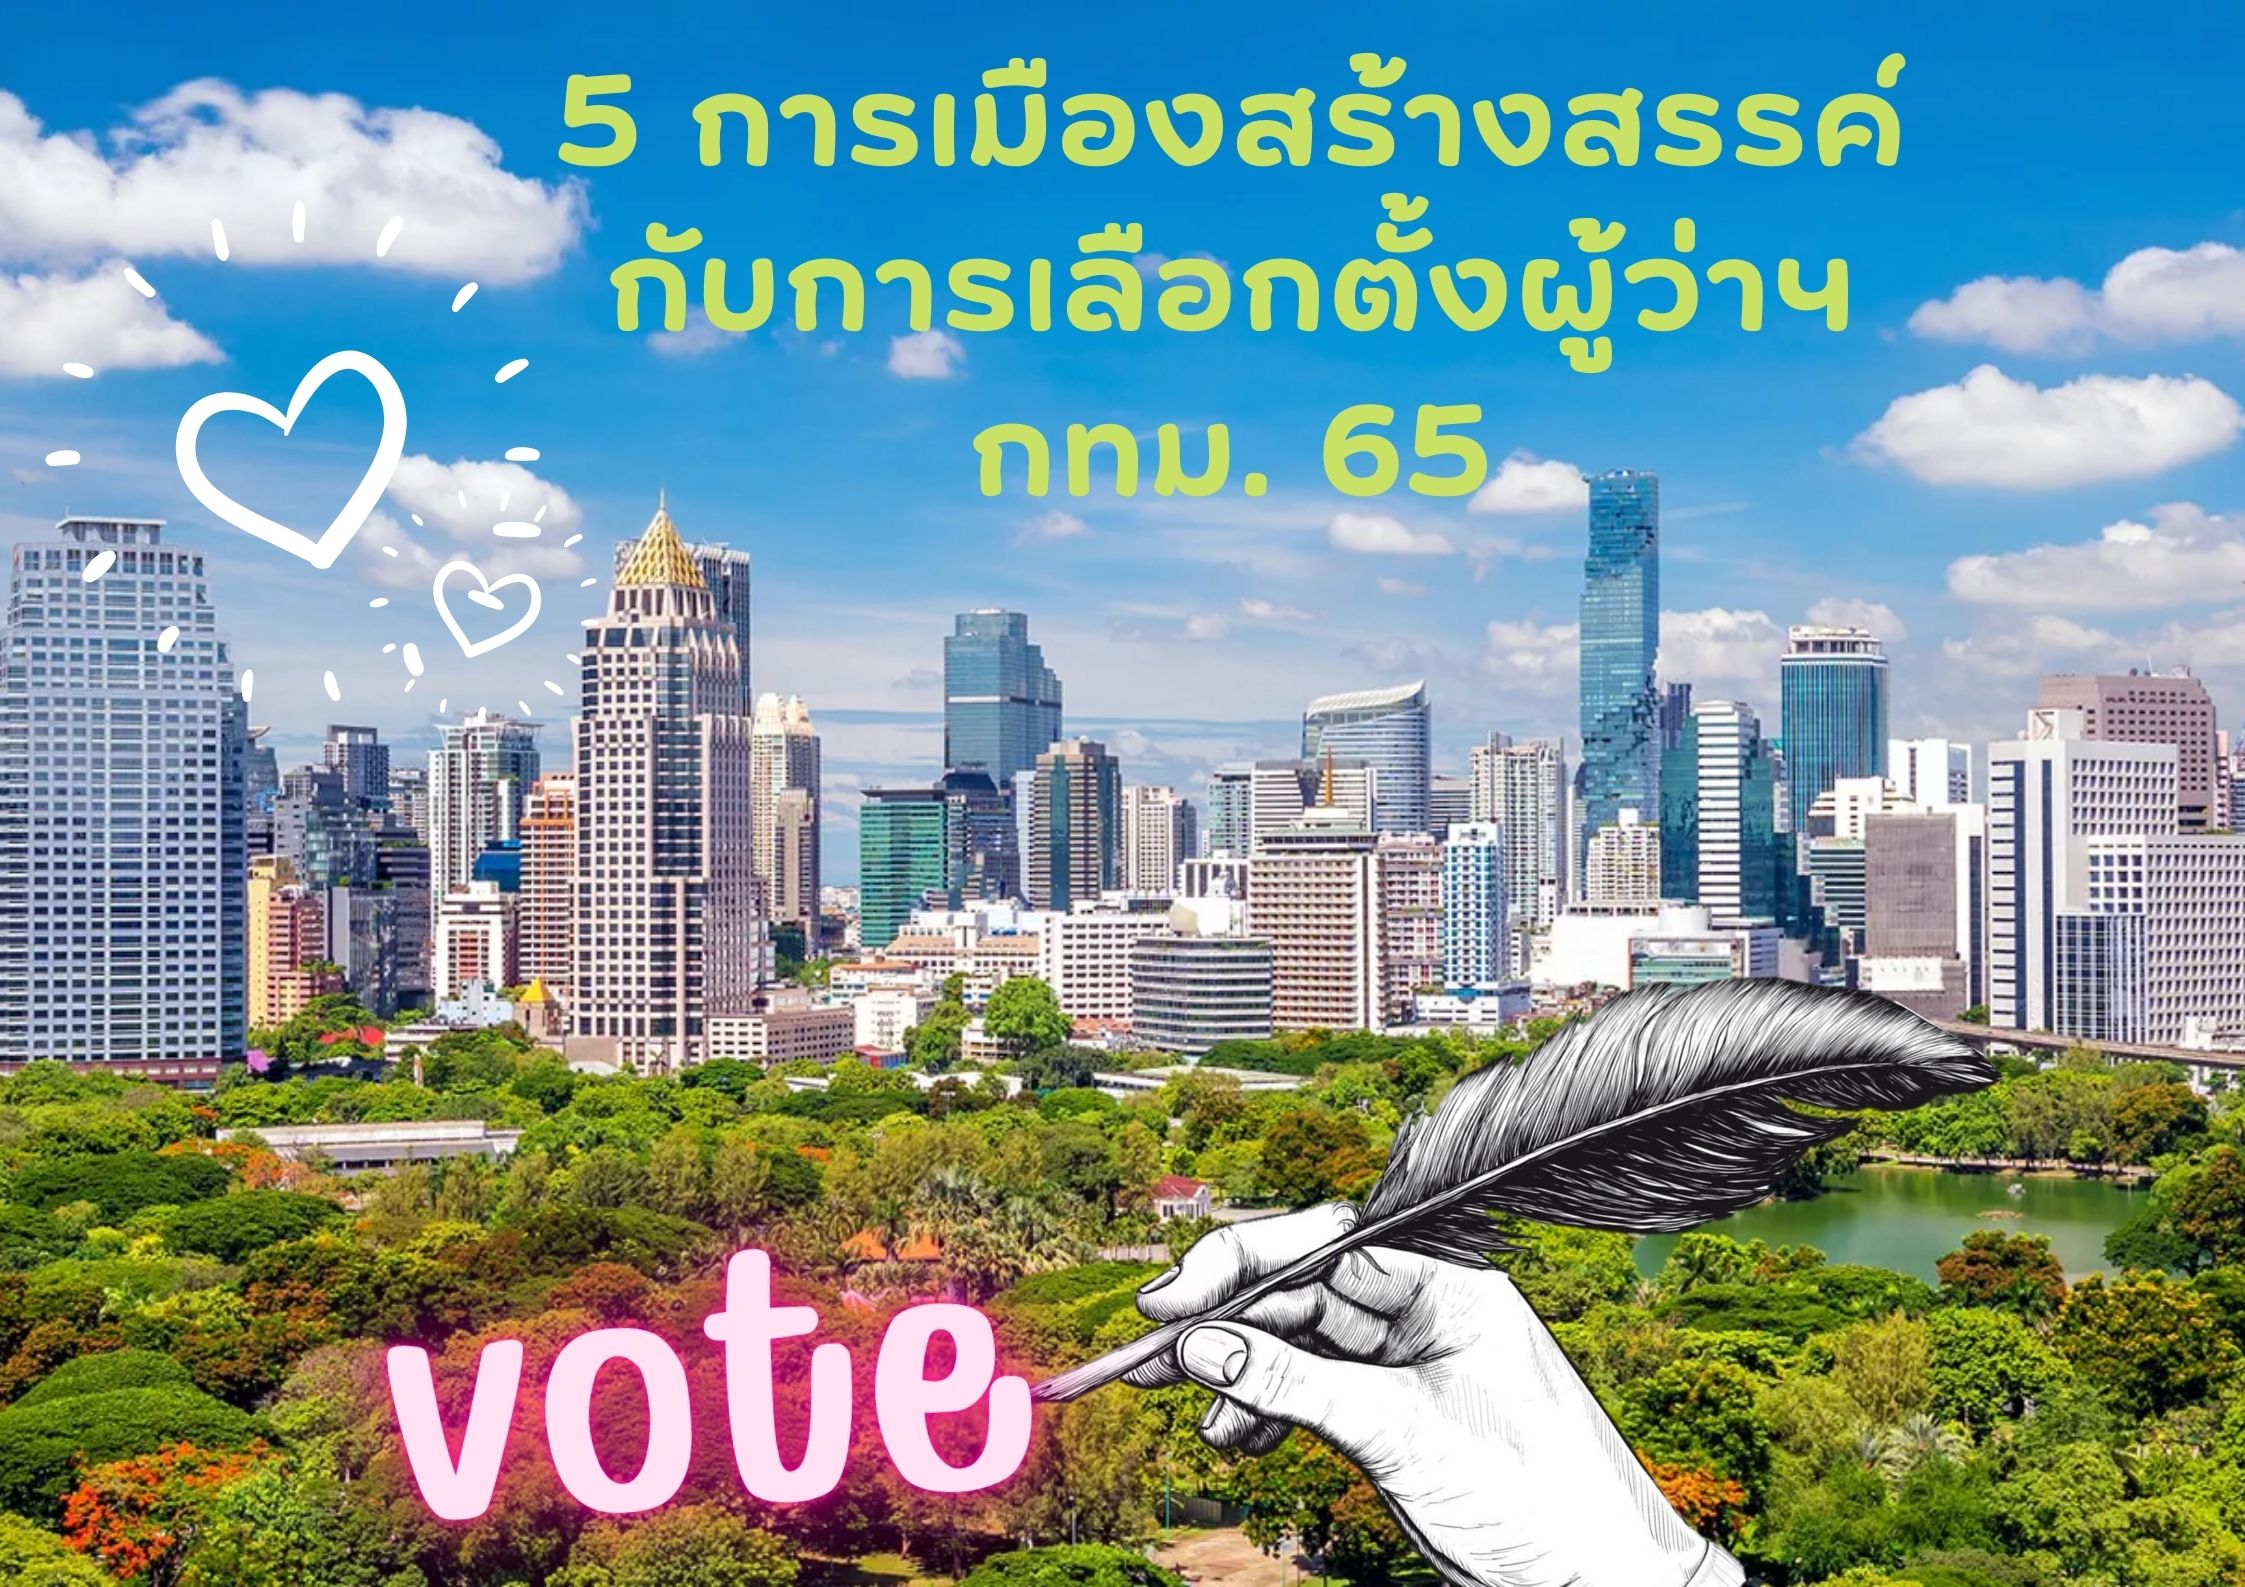 5 เมืองสร้างสรรค์กับการเลือกตั้งผู้ว่าราชการกรุงเทพมหานคร 2565